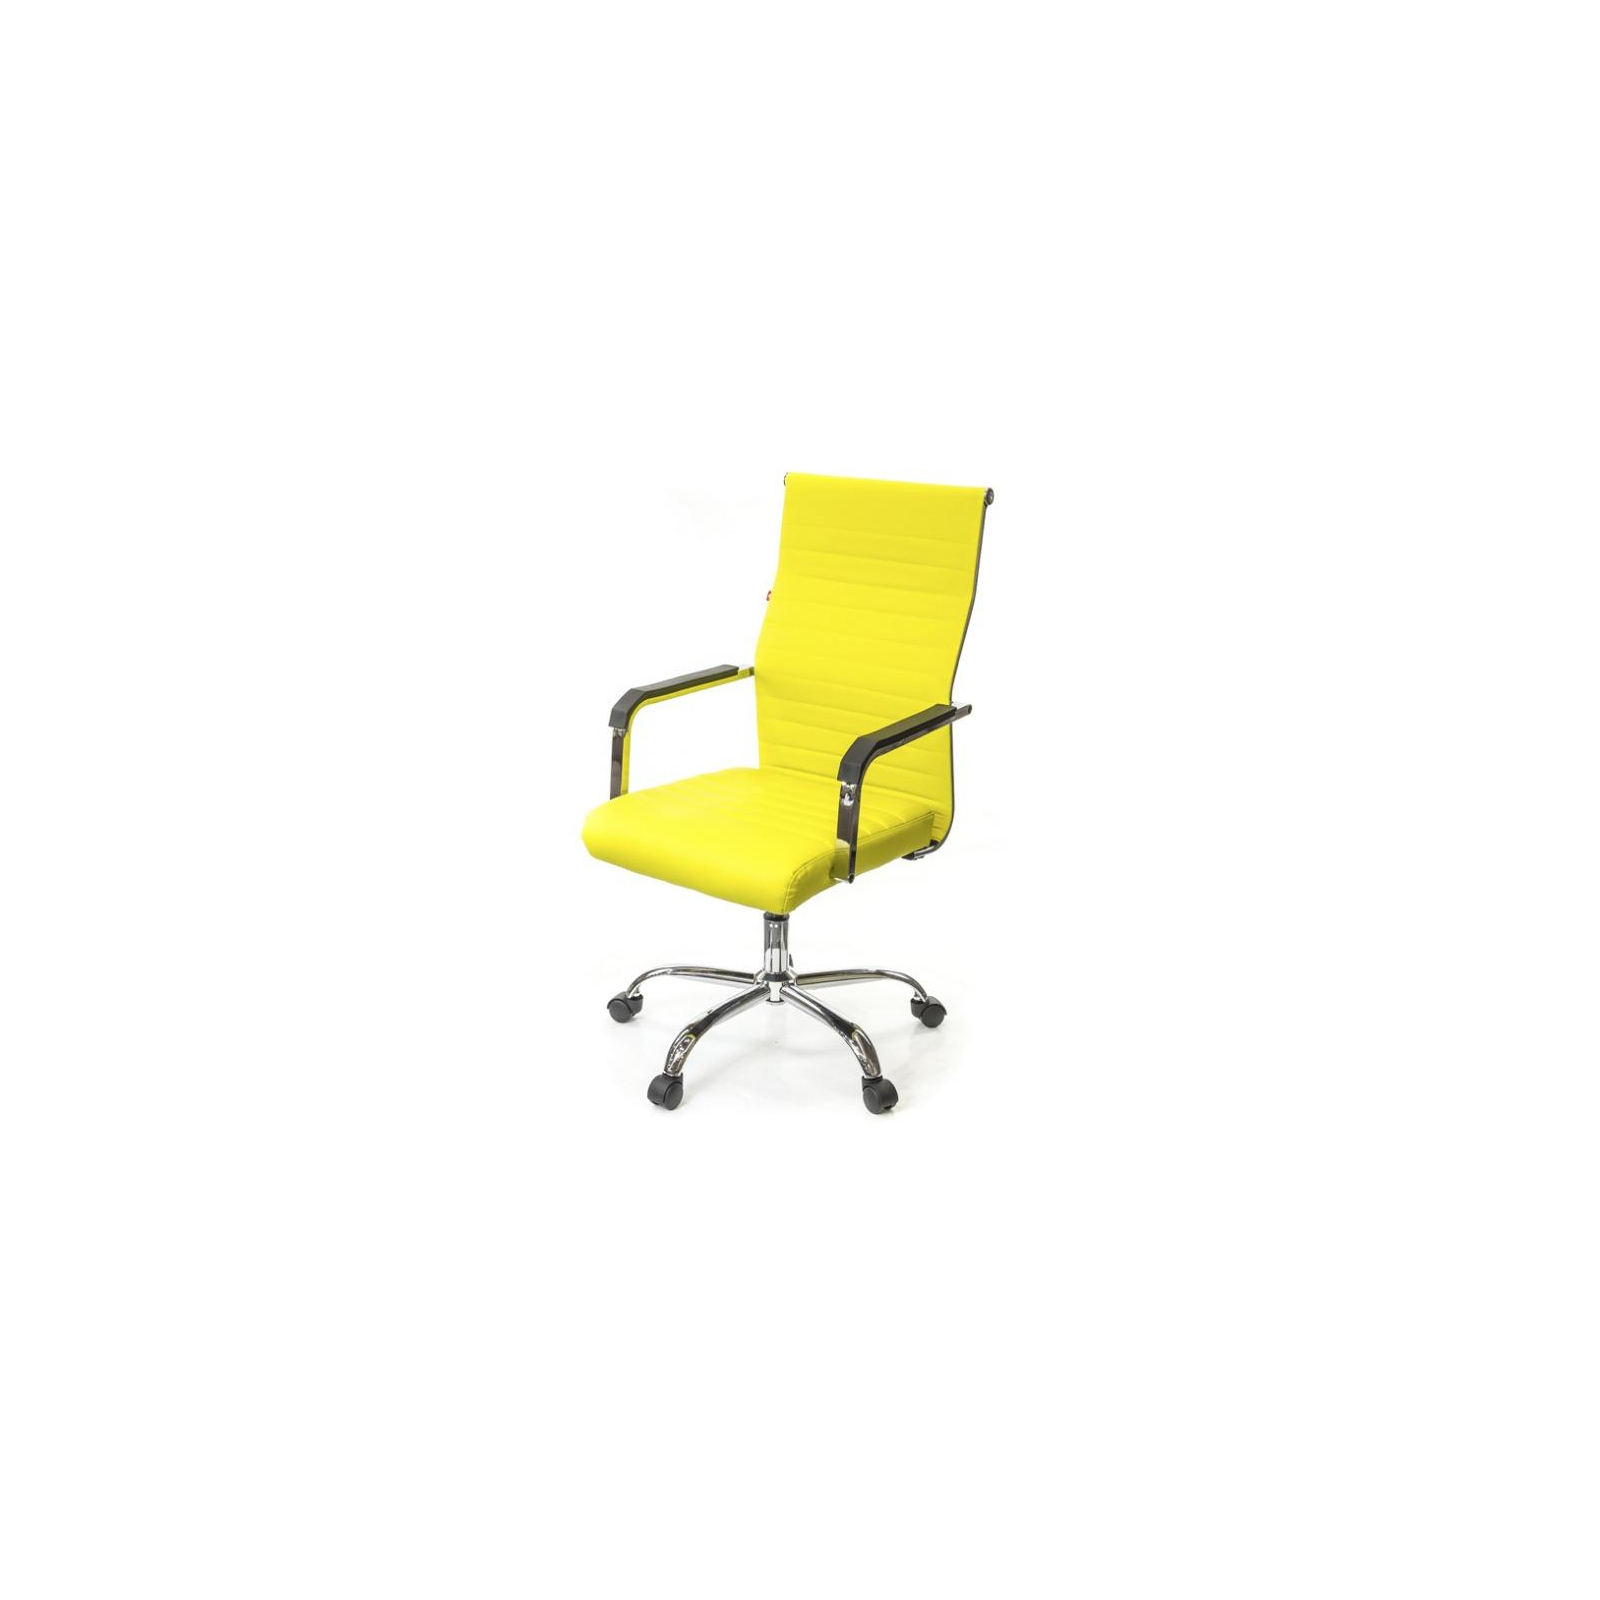 Офісне крісло Аклас Кап FX СН TILT Красное (09904)